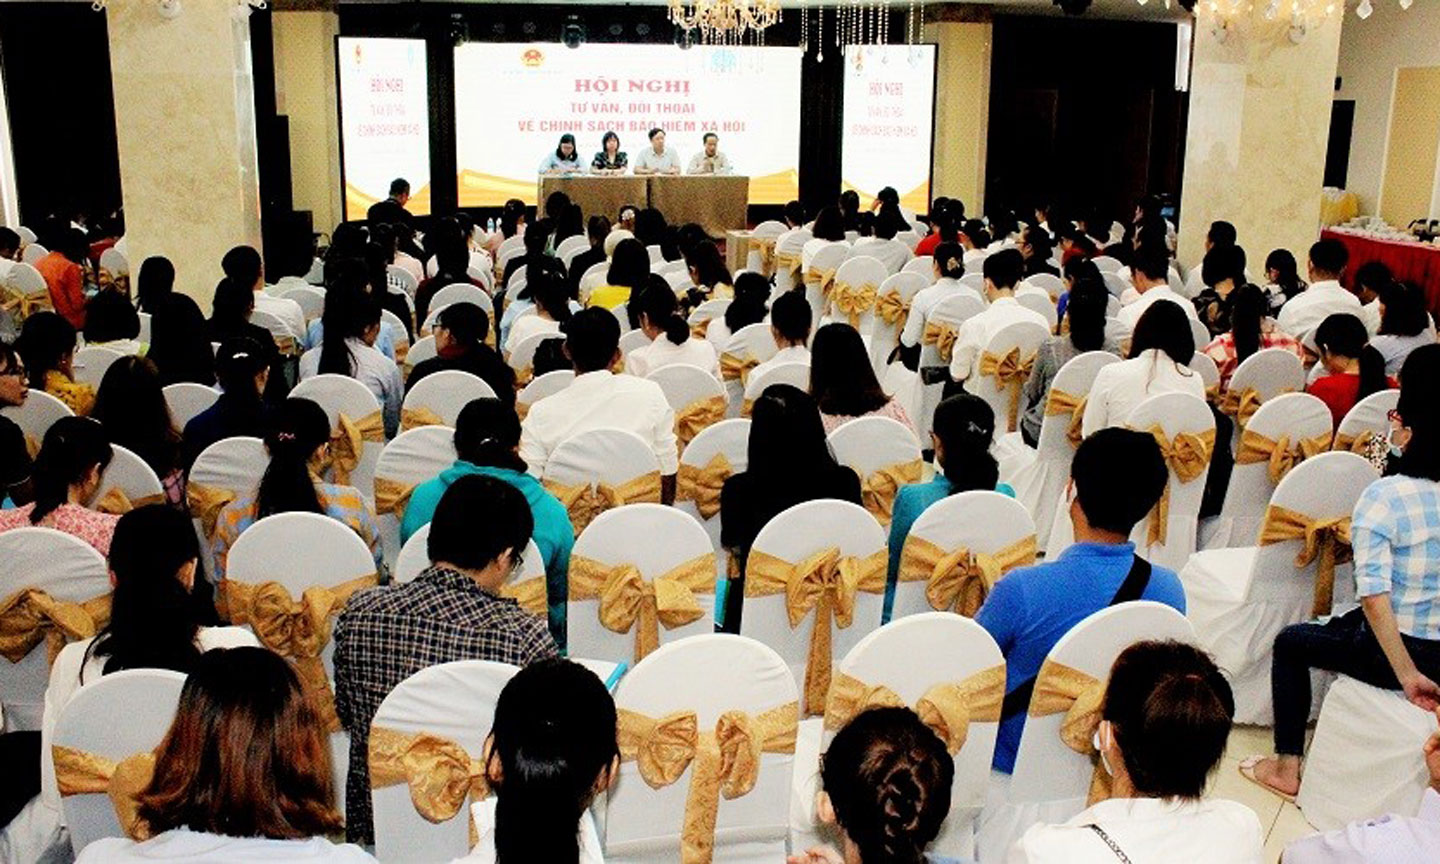 Hội nghị tư vấn đối thoại với các DN trong tỉnh Tiền Giang do Bộ Lao động- Thương binh và Xã hội - BHXH Việt Nam phối hợp tổ chức tháng 7/2020.